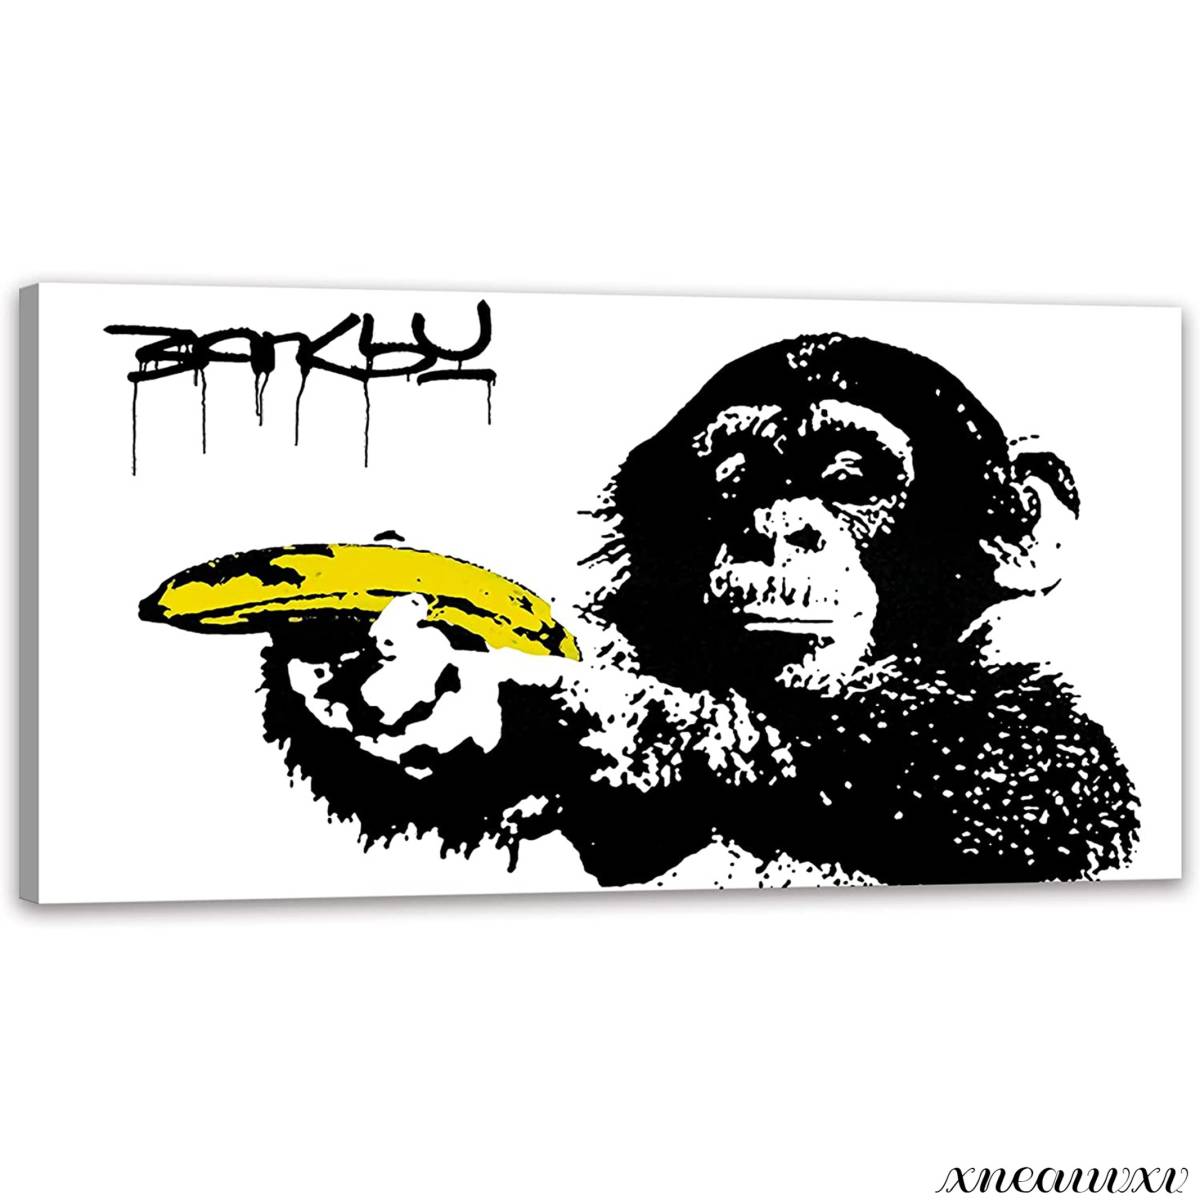 Große Banksy-Kunsttafel, Reproduktion, Innenraumdekoration, Leinwandgemälde, Wandbehang, einfarbig, schlicht, abstrakt, modern, Schimpanse, Kunstwerk, Malerei, Grafik